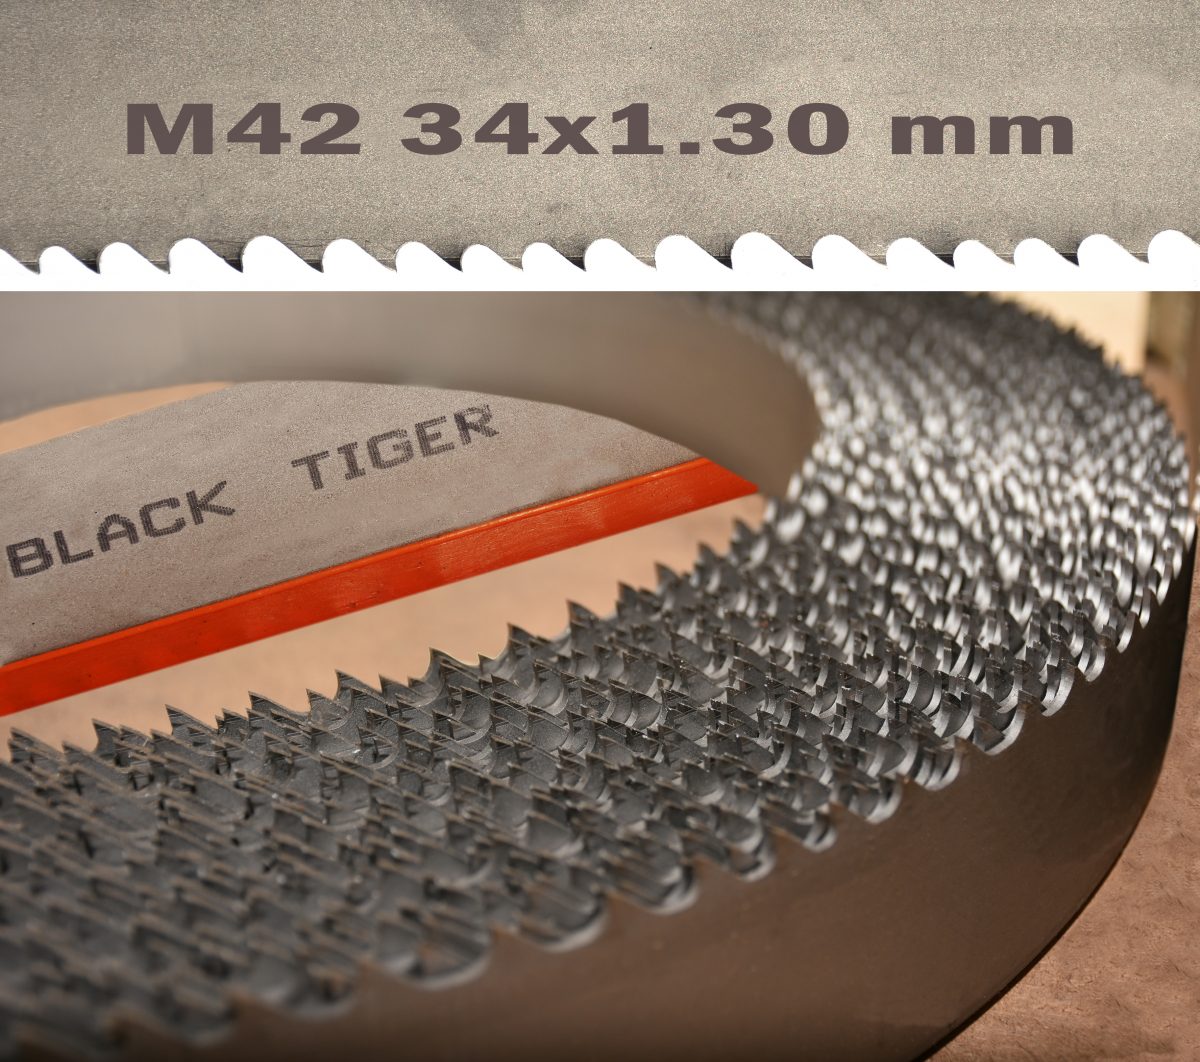 BLACK TIGER Bi Metal Probeam M42 34x1,3